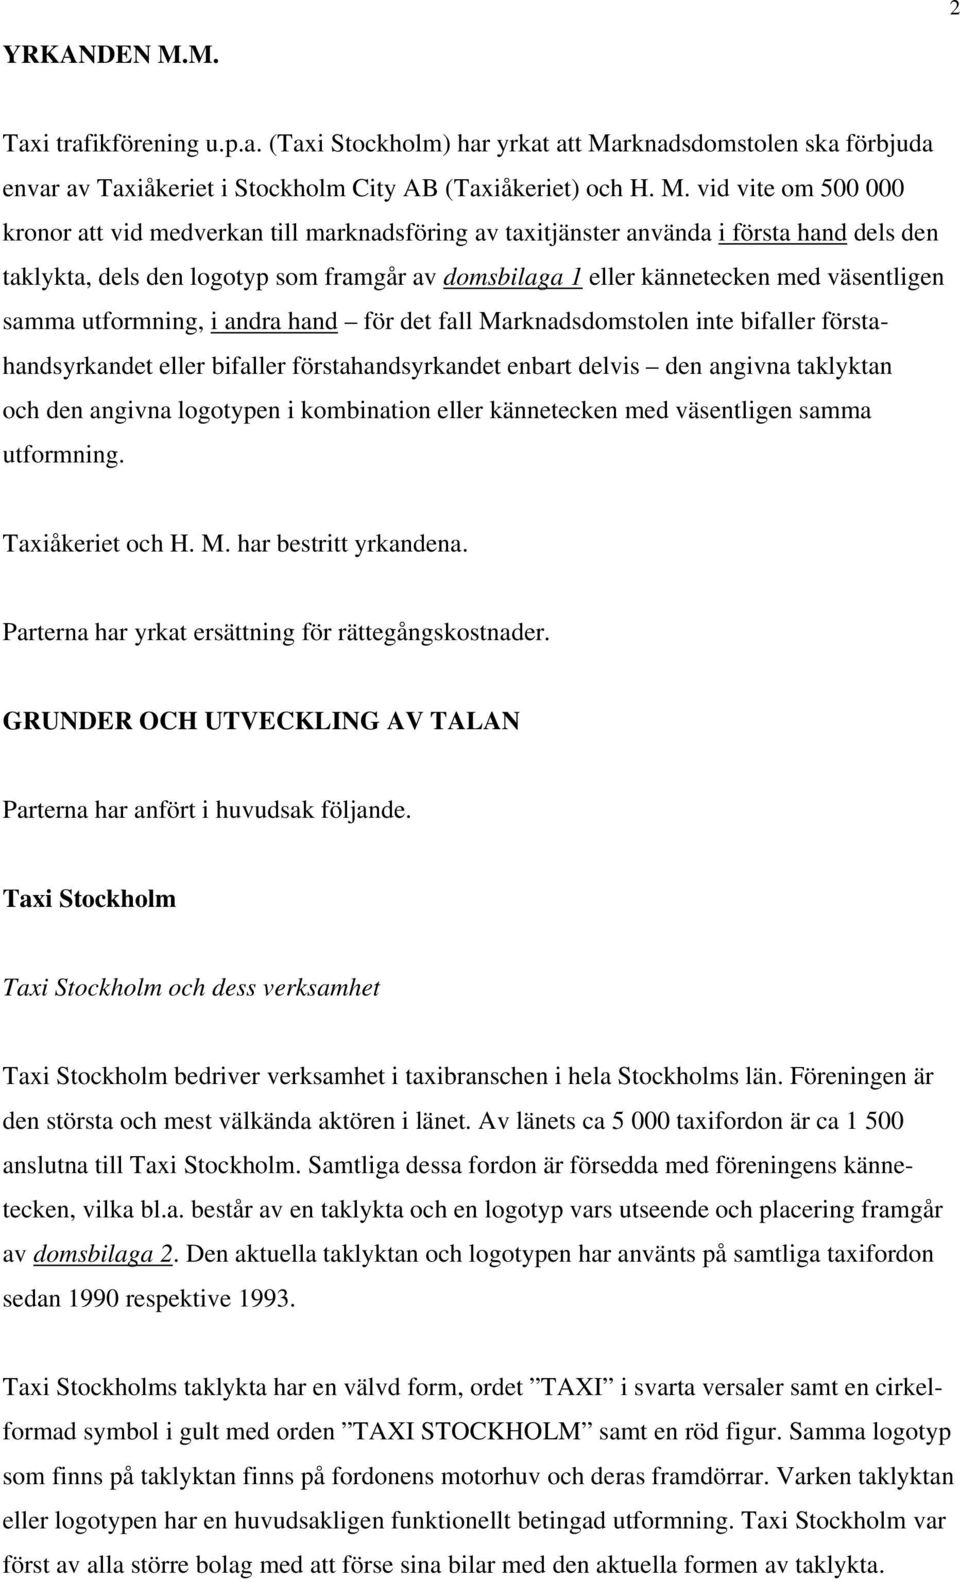 rknadsdomstolen ska förbjuda envar av Taxiåkeriet i Stockholm City AB (Taxiåkeriet) och H. M.